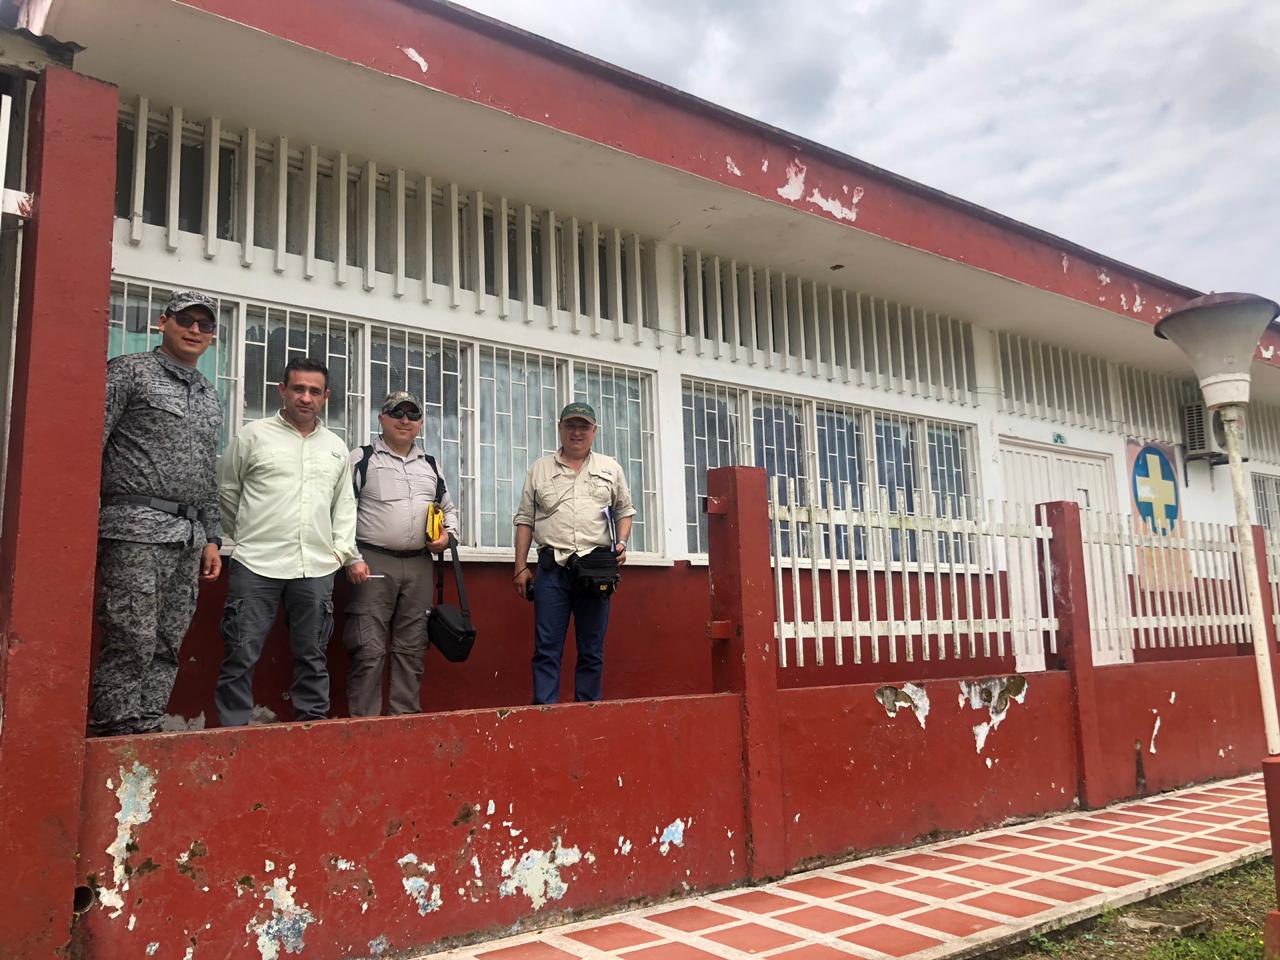 La División de ingenieros del Ejército de Estados Unidos y la Fuerza Aérea Colombiana se unen para beneficiar a la comunidad del Caquetá